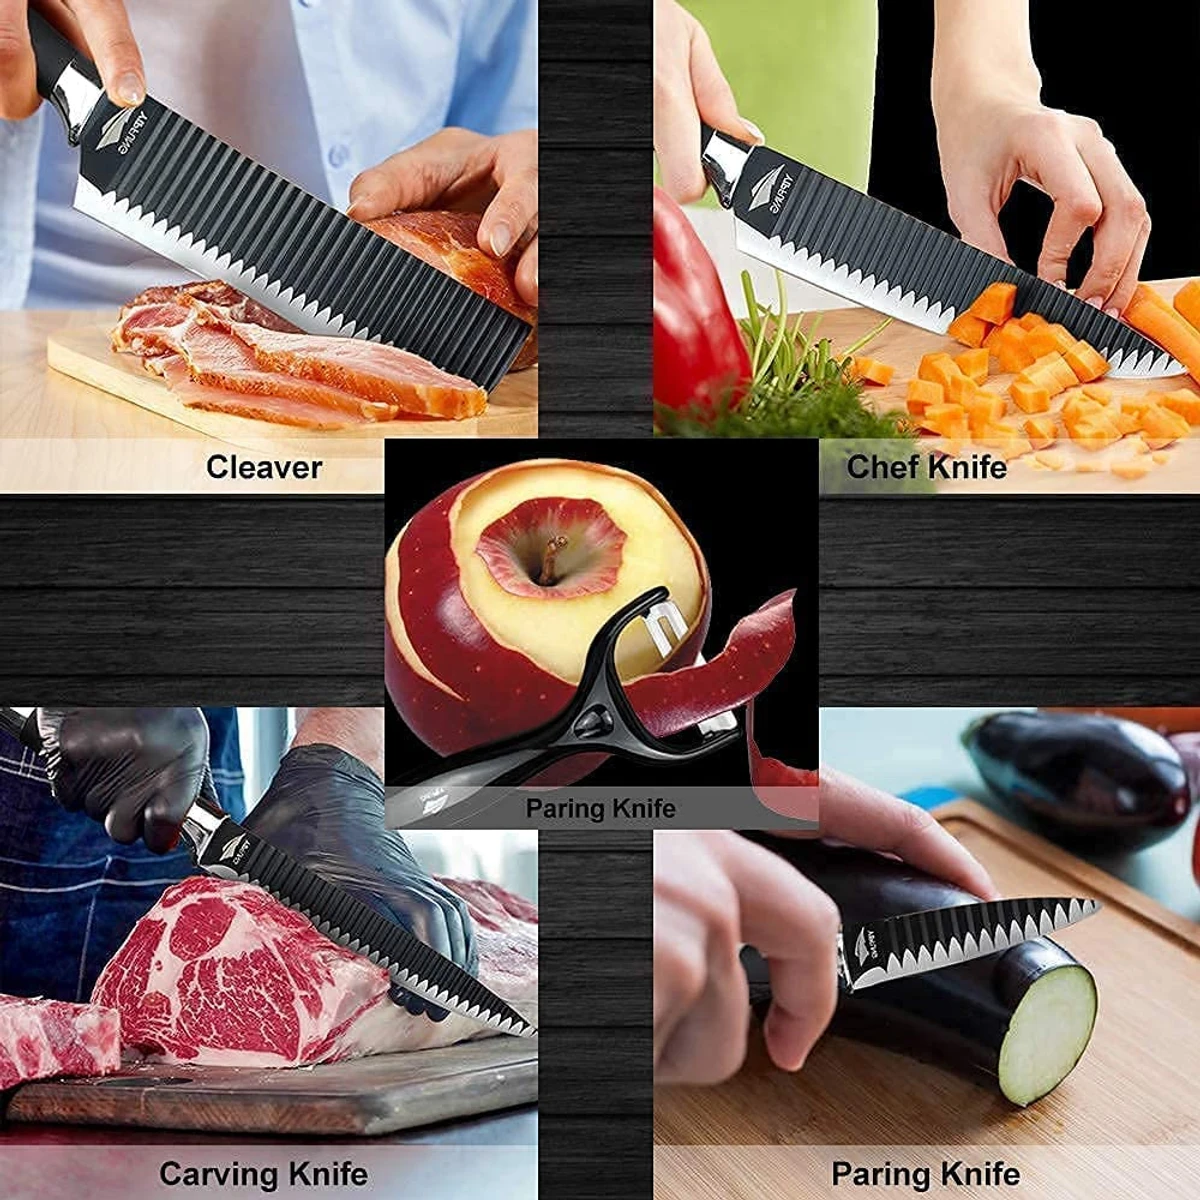 6PCS Black Blade Knife Set Wave Pattern Forged Kitchen Knives Set Stainless Steel Slicer Peeler Scissors